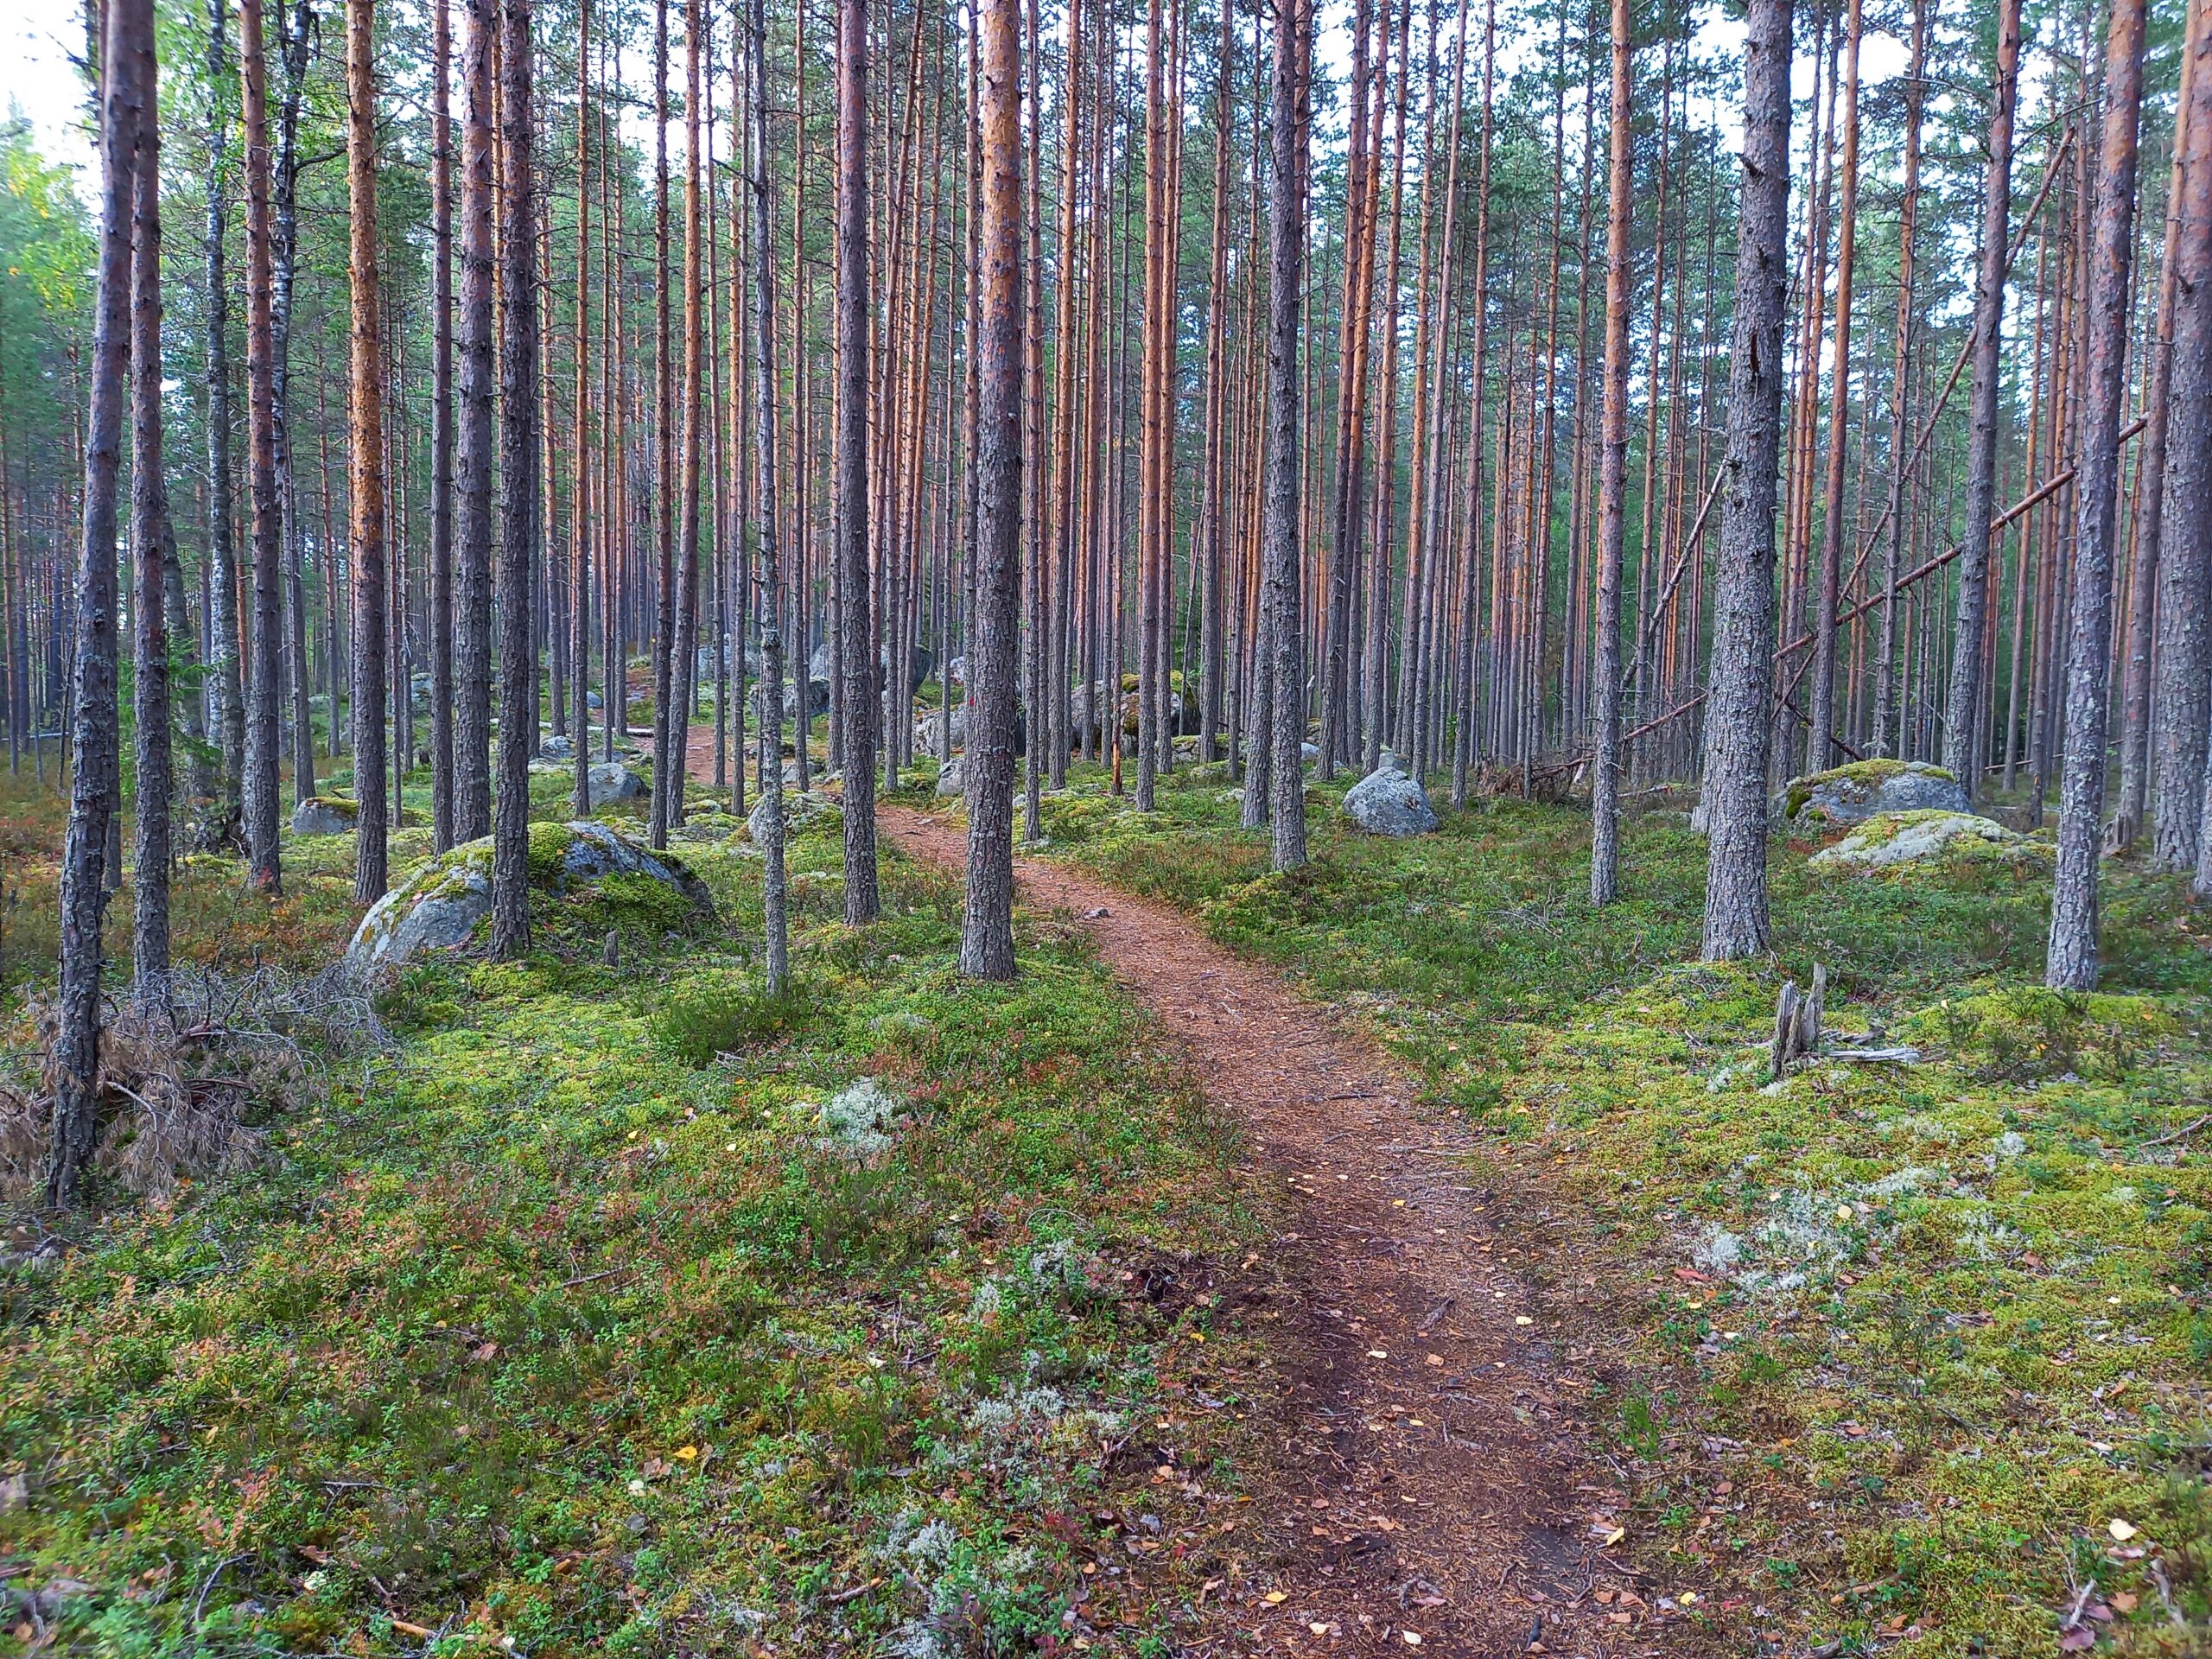 Projektiapu: Apua ja tukea viestintään, kehittämiseen ja projekteihin. Uraravistelu: Rohkaisua uran ja työelämän käännekohtiin. Kuvassa metsäpolku jossain päin Suomea.